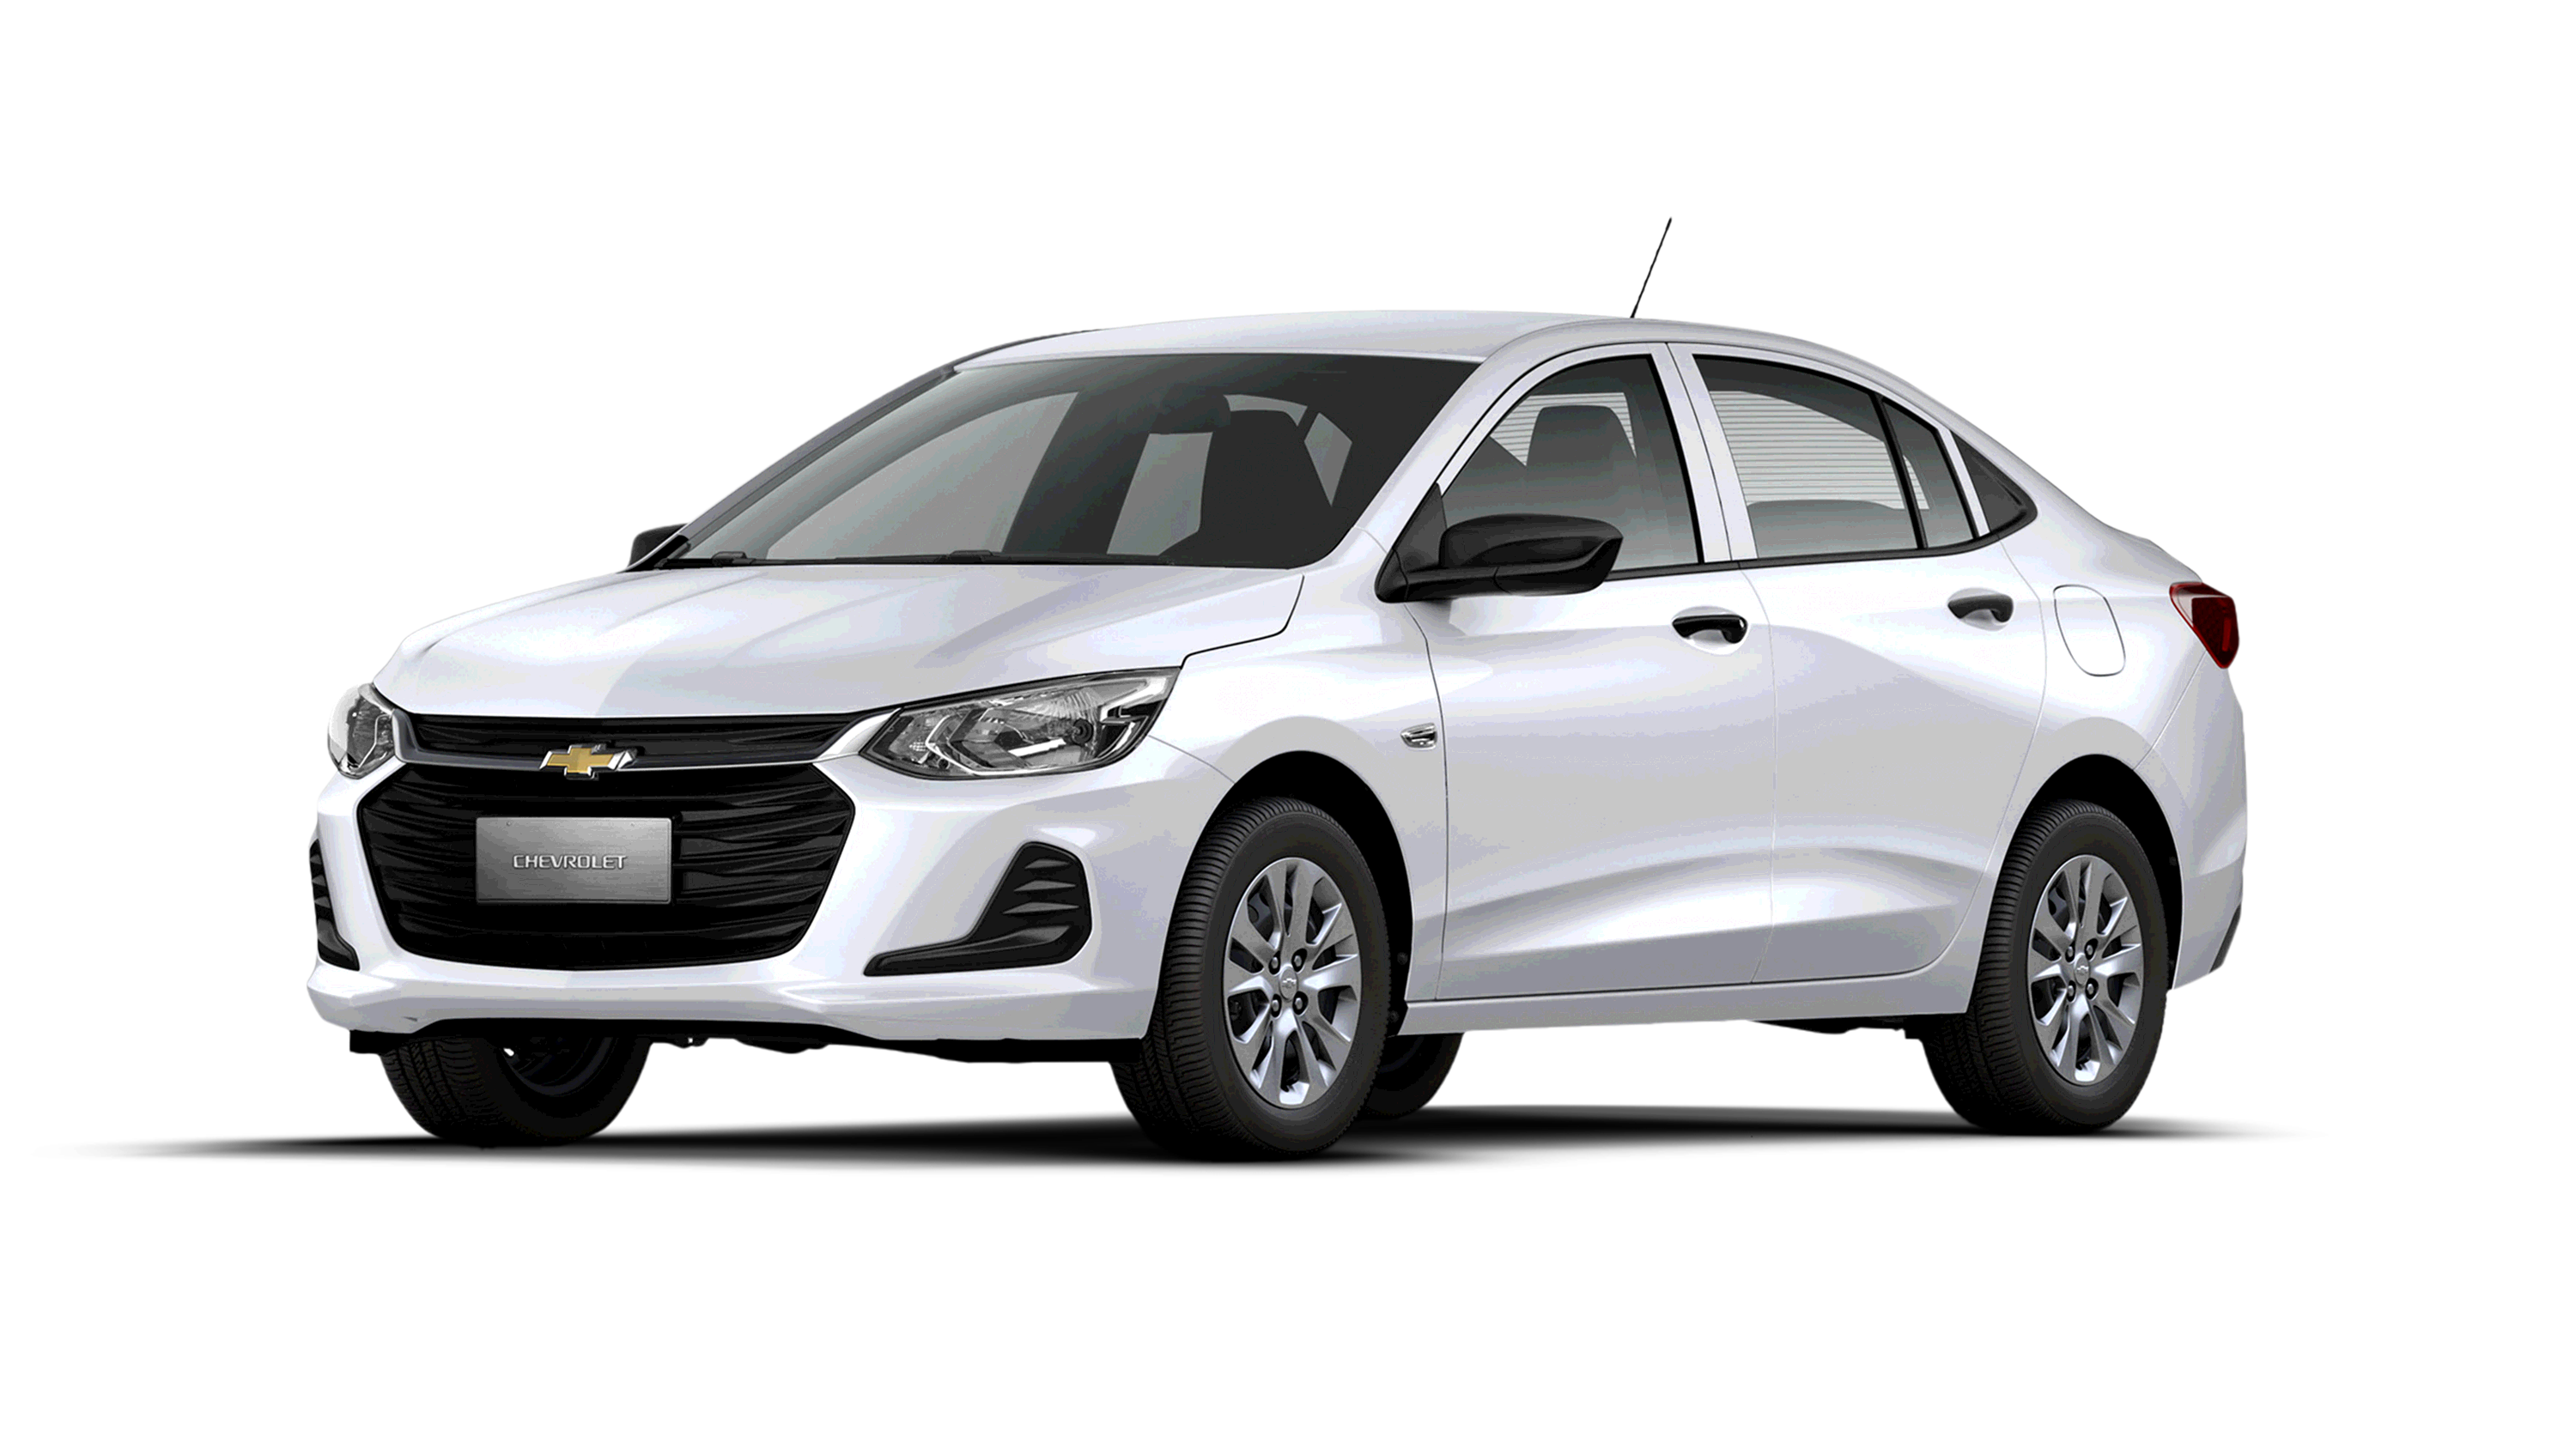 Precios y versiones de Chevrolet Onix 2021